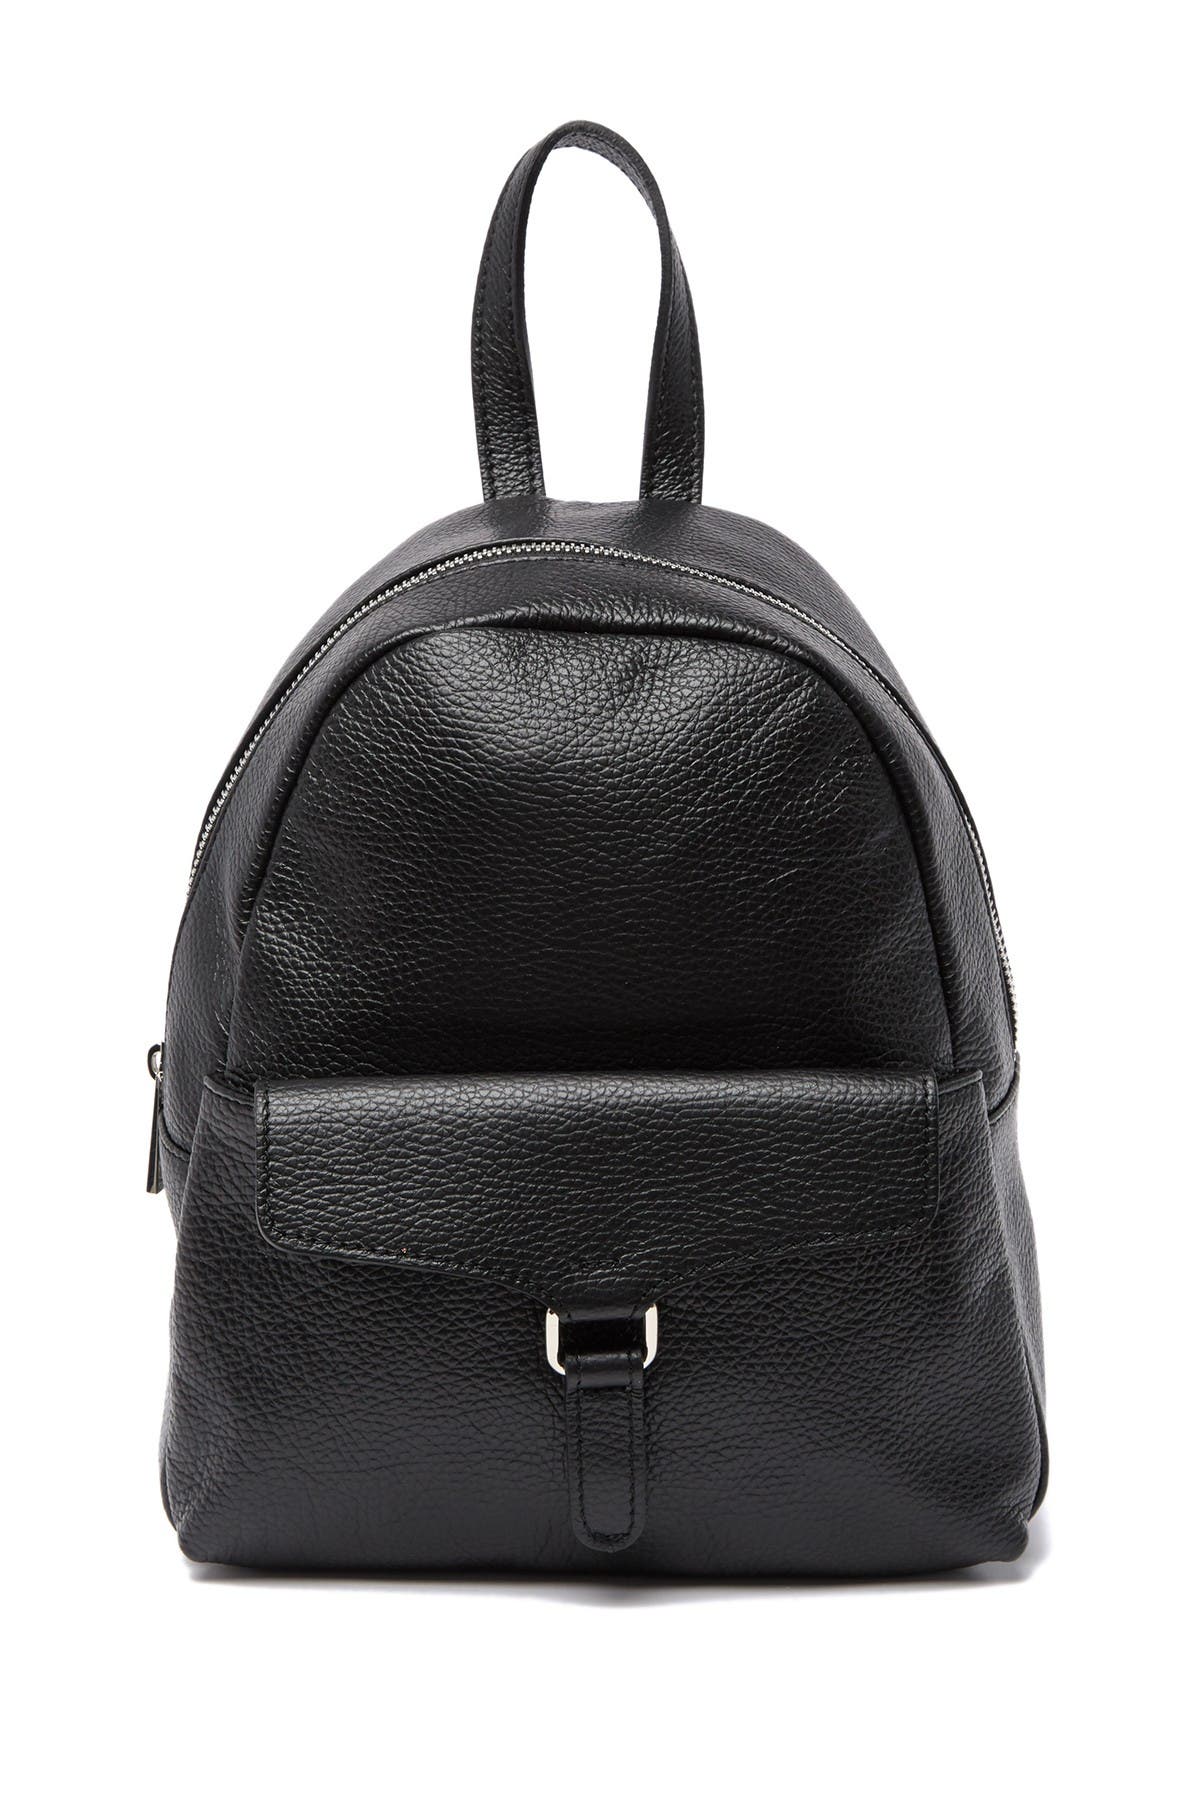 isabella rhea backpack